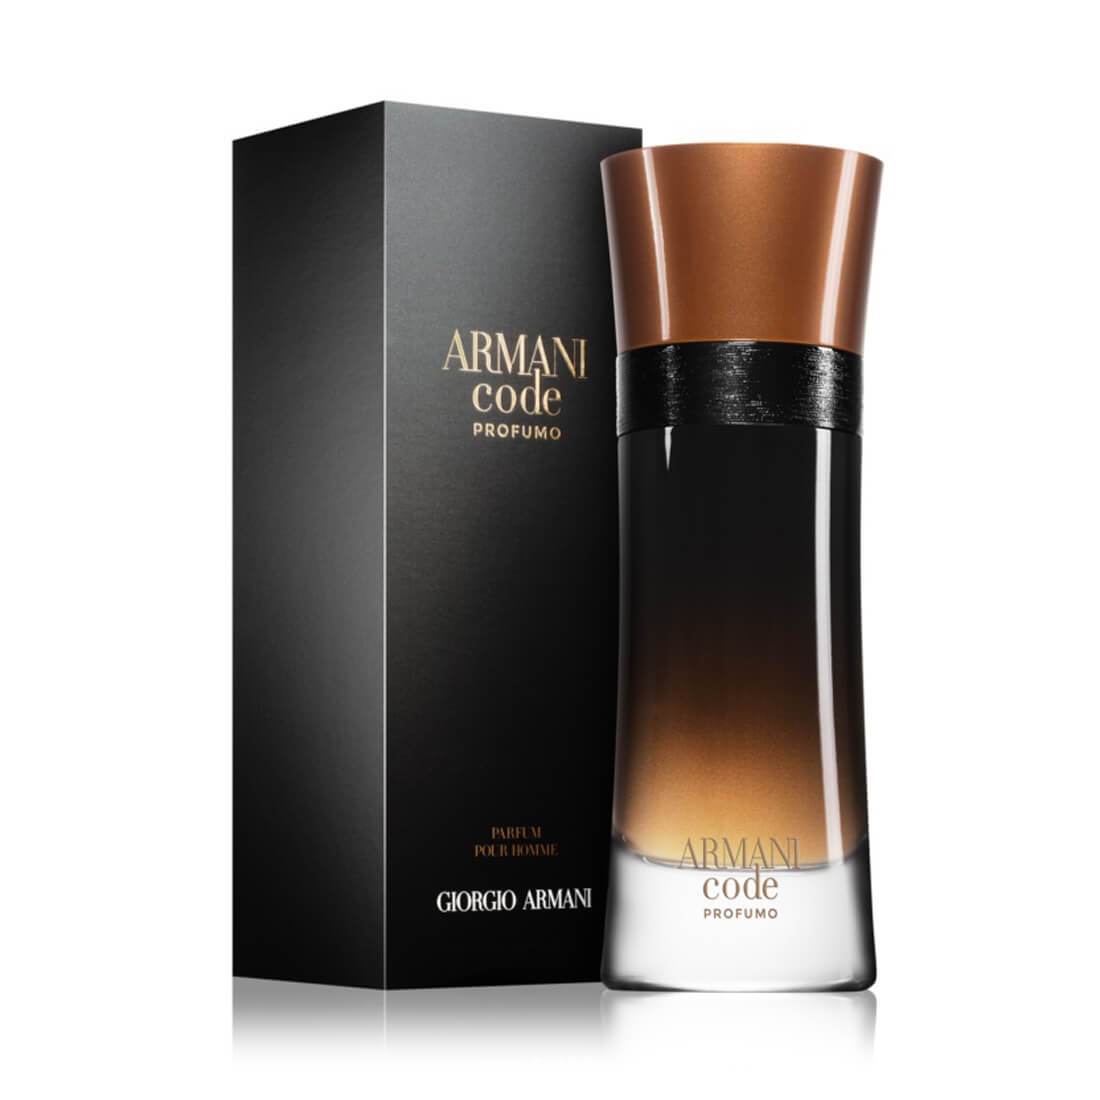 armani code profumo 200ml price